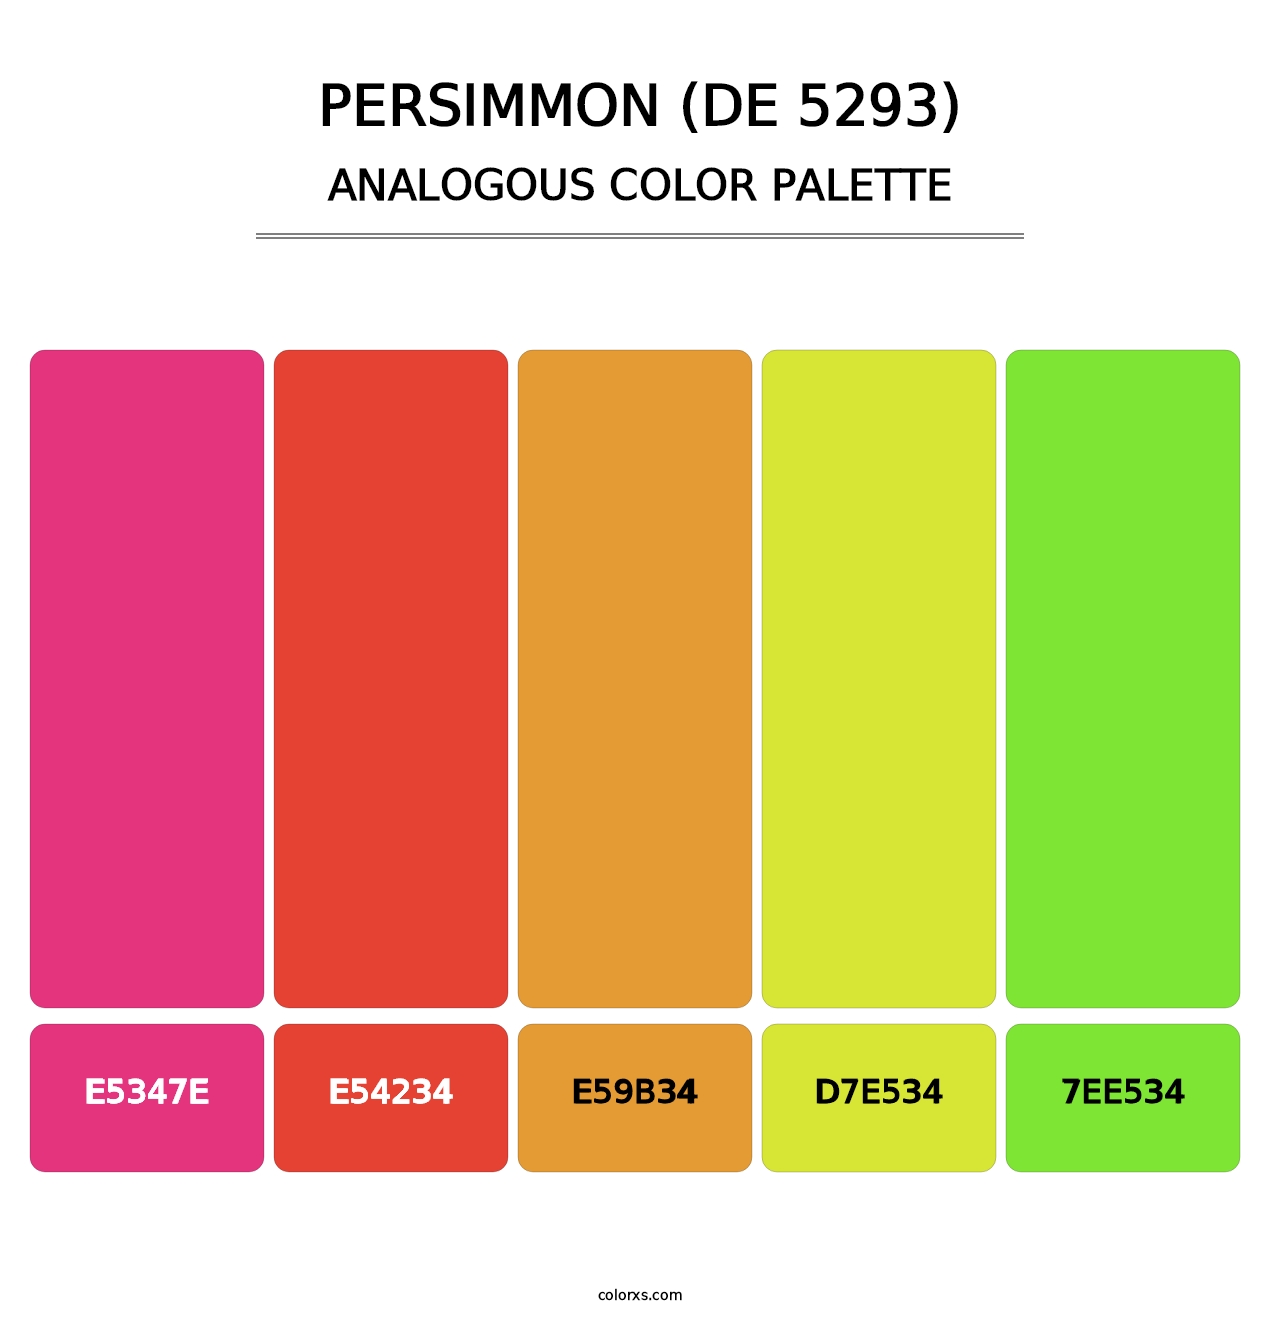 Persimmon (DE 5293) - Analogous Color Palette